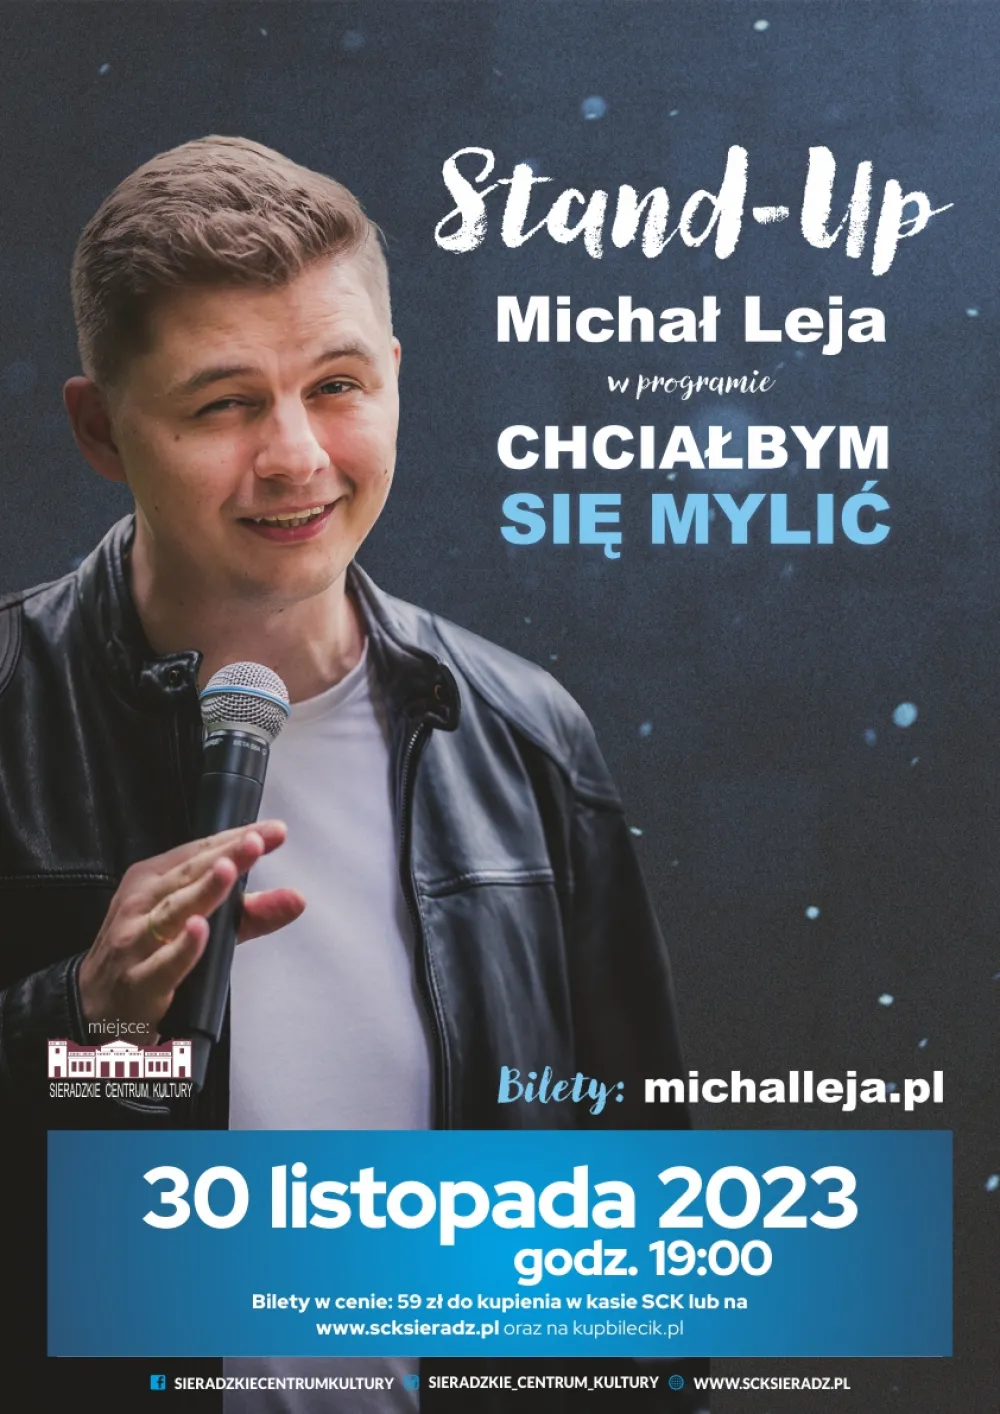 Stand-up Michał Leja, w programie 